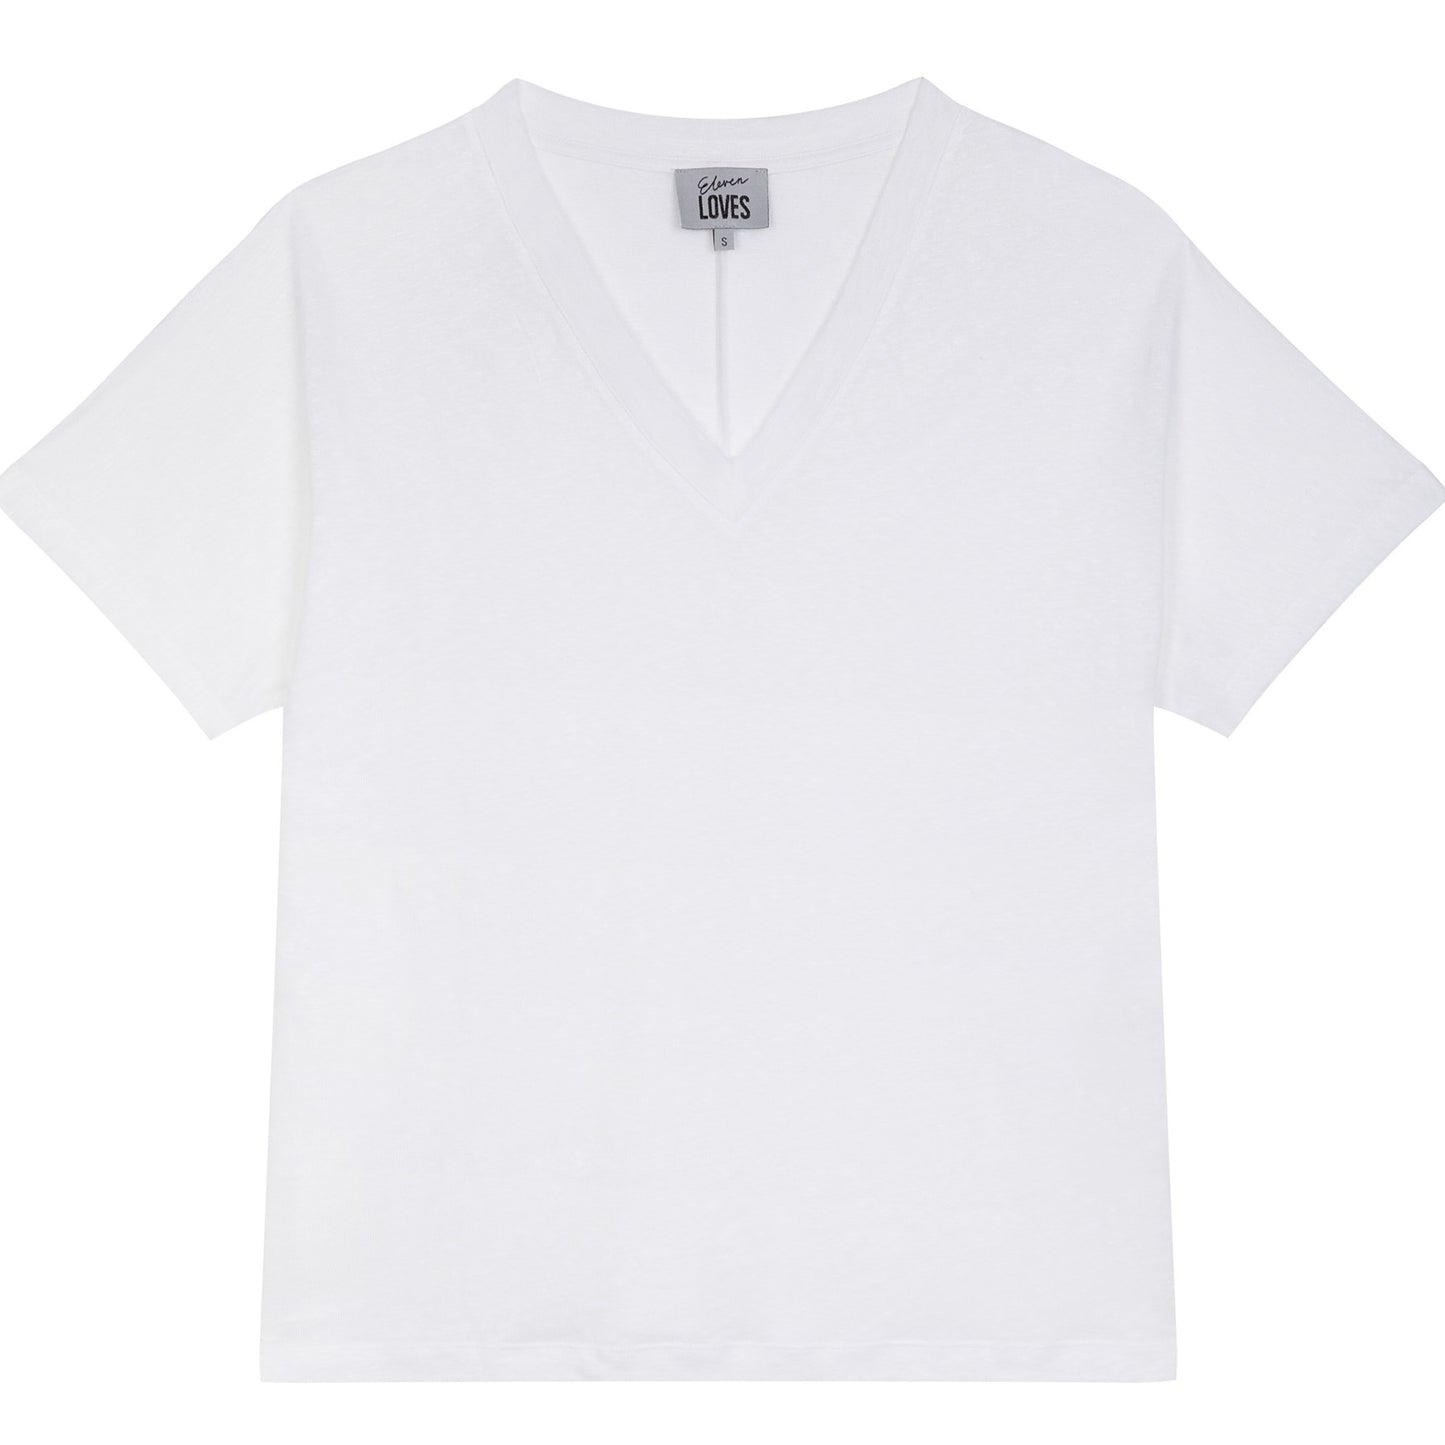 Eleven loves elevenloves 11 loves ellenloves sustainable lucy linen v-neck t-shirt white